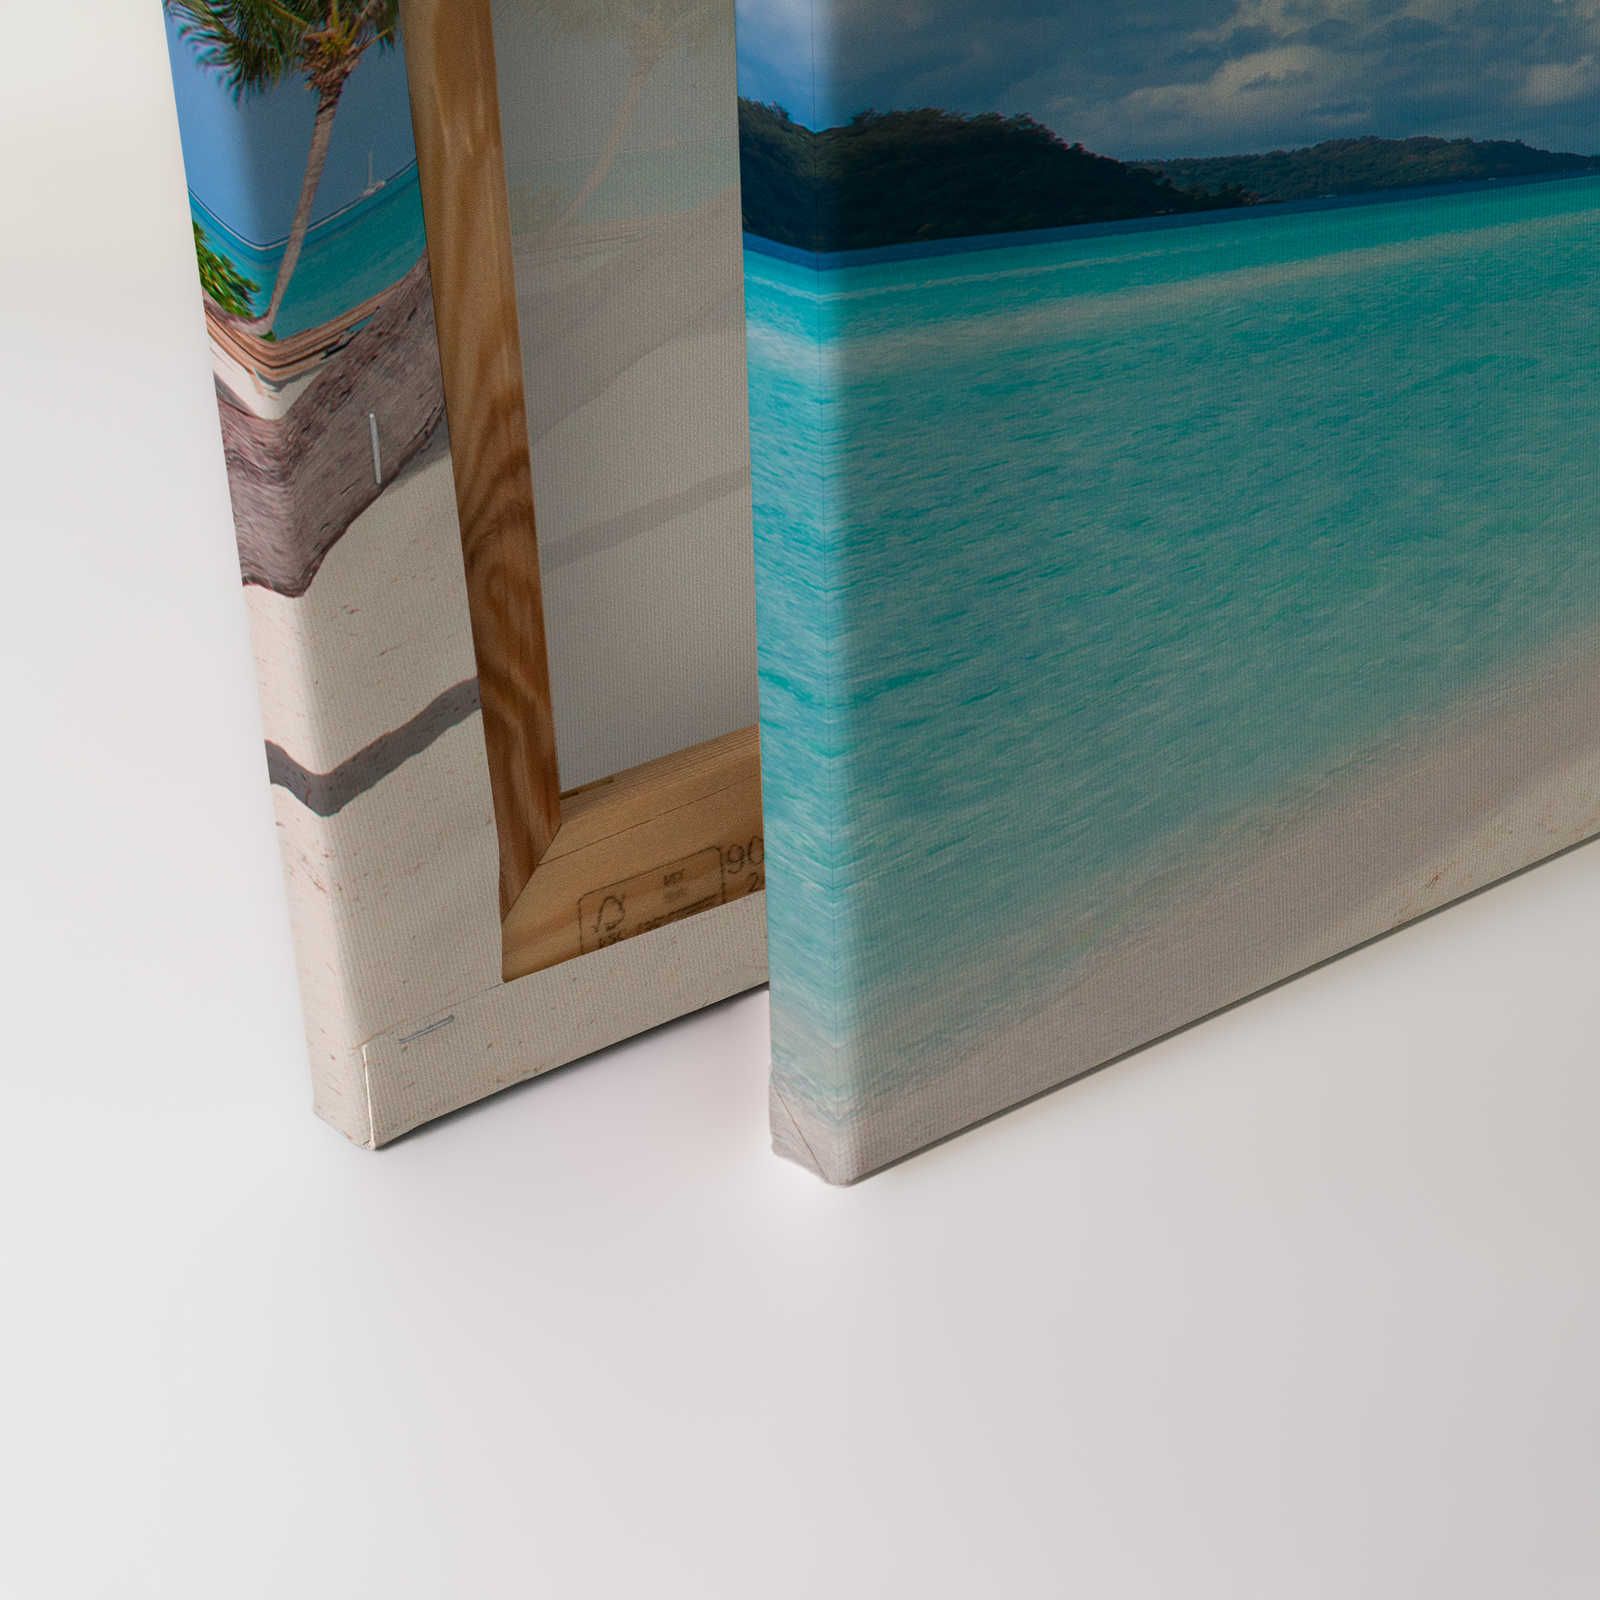             Tableau toile Plage idyllique avec eau claire et palmiers - 0,90 m x 0,60 m
        